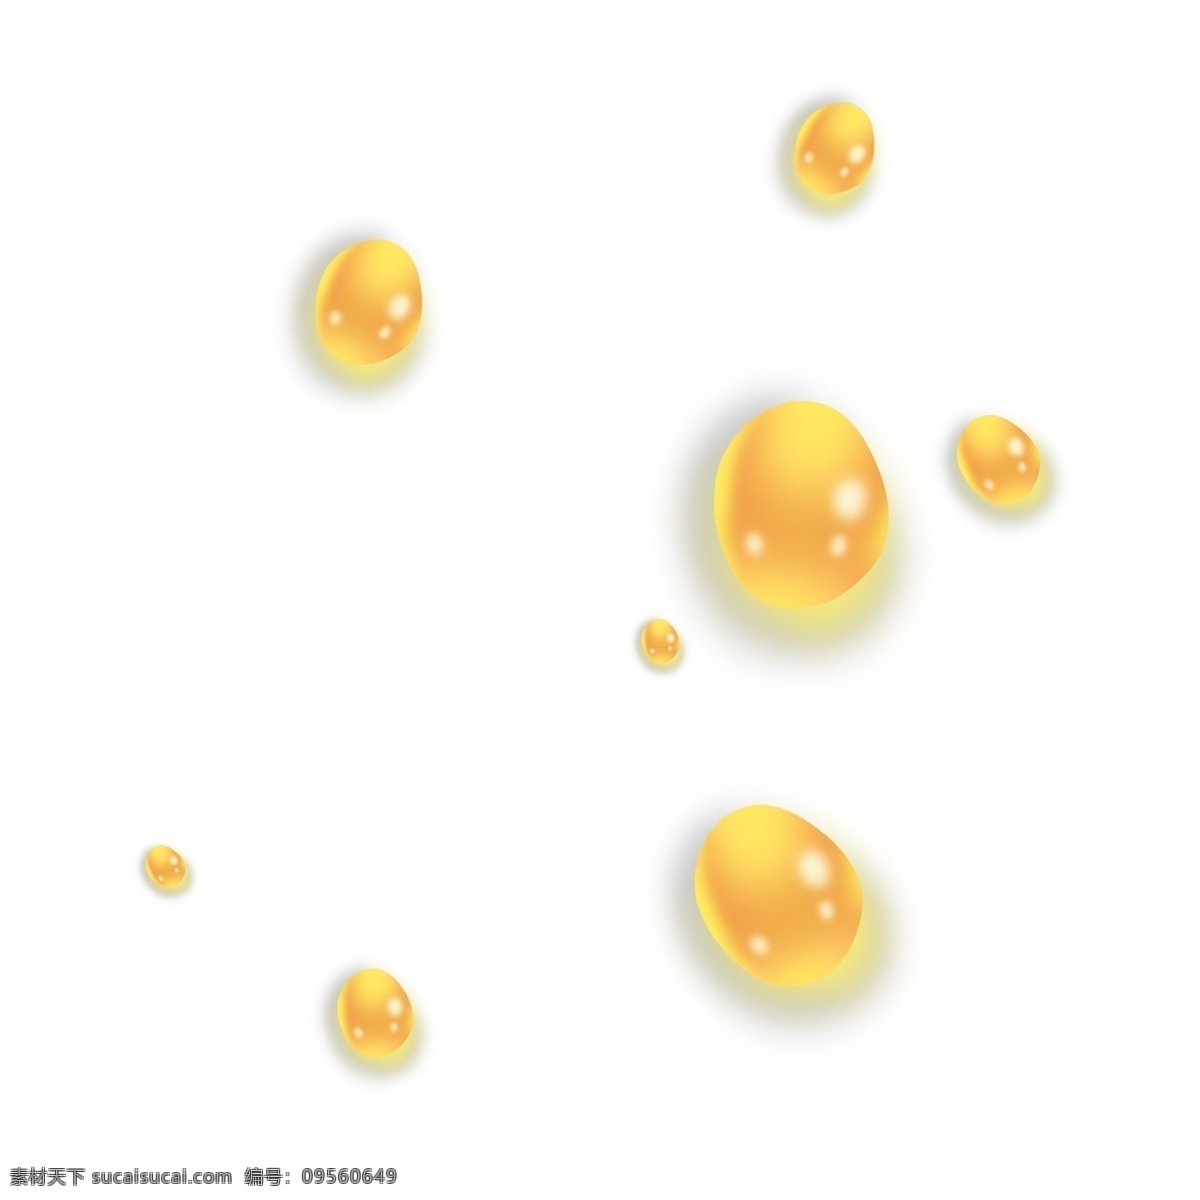 深黄色 立体 飞溅 油 滴 油滴 喷洒 撒落 水珠 黄色 水泡 立体感 半透明 精致 小巧 可爱